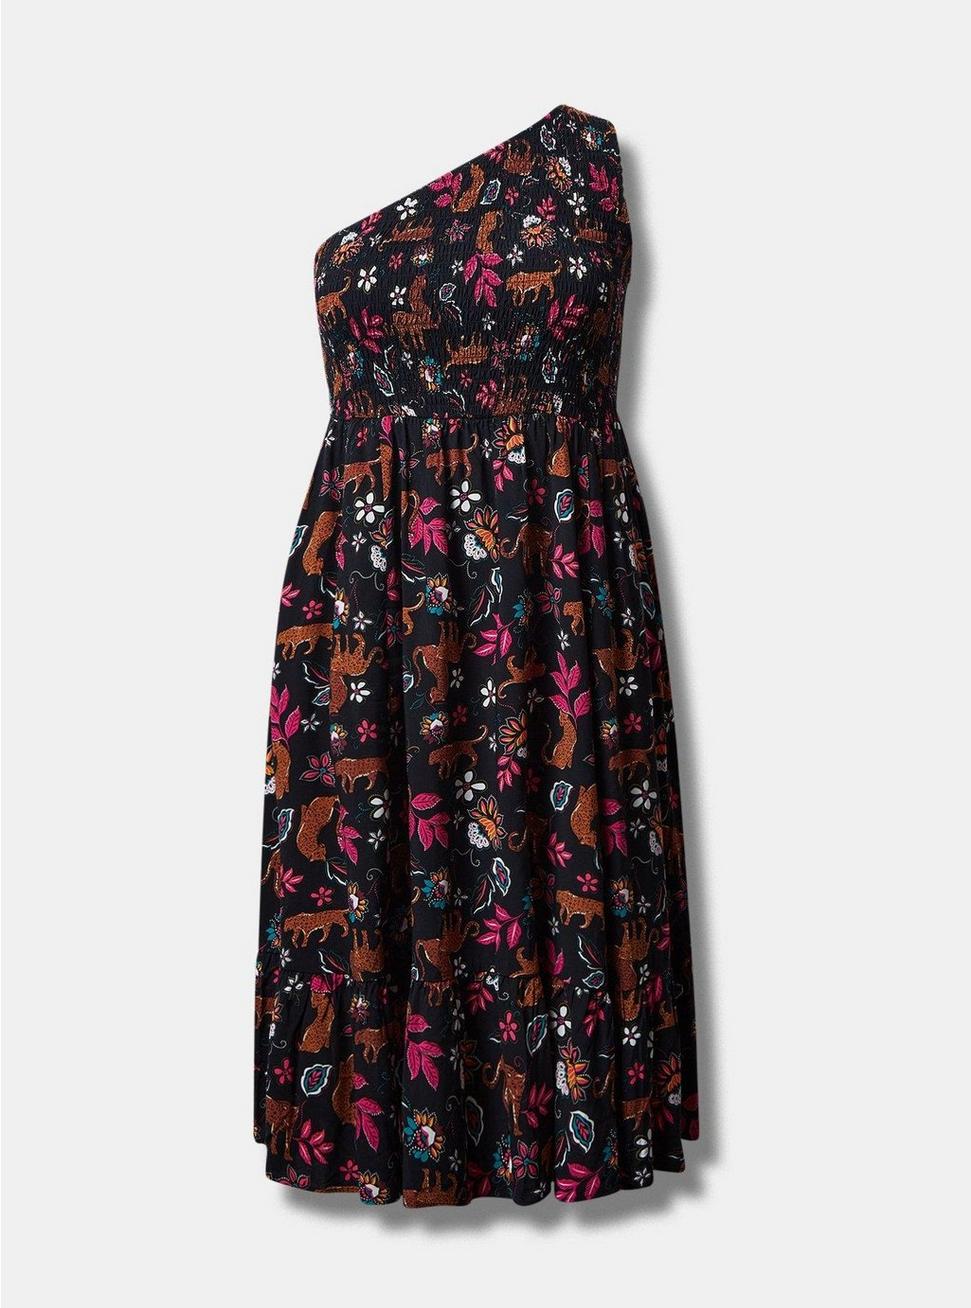 Plus Size Midi Challis One-Shoulder Dress, LEOPARD LEAVES DEEP BLACK, hi-res